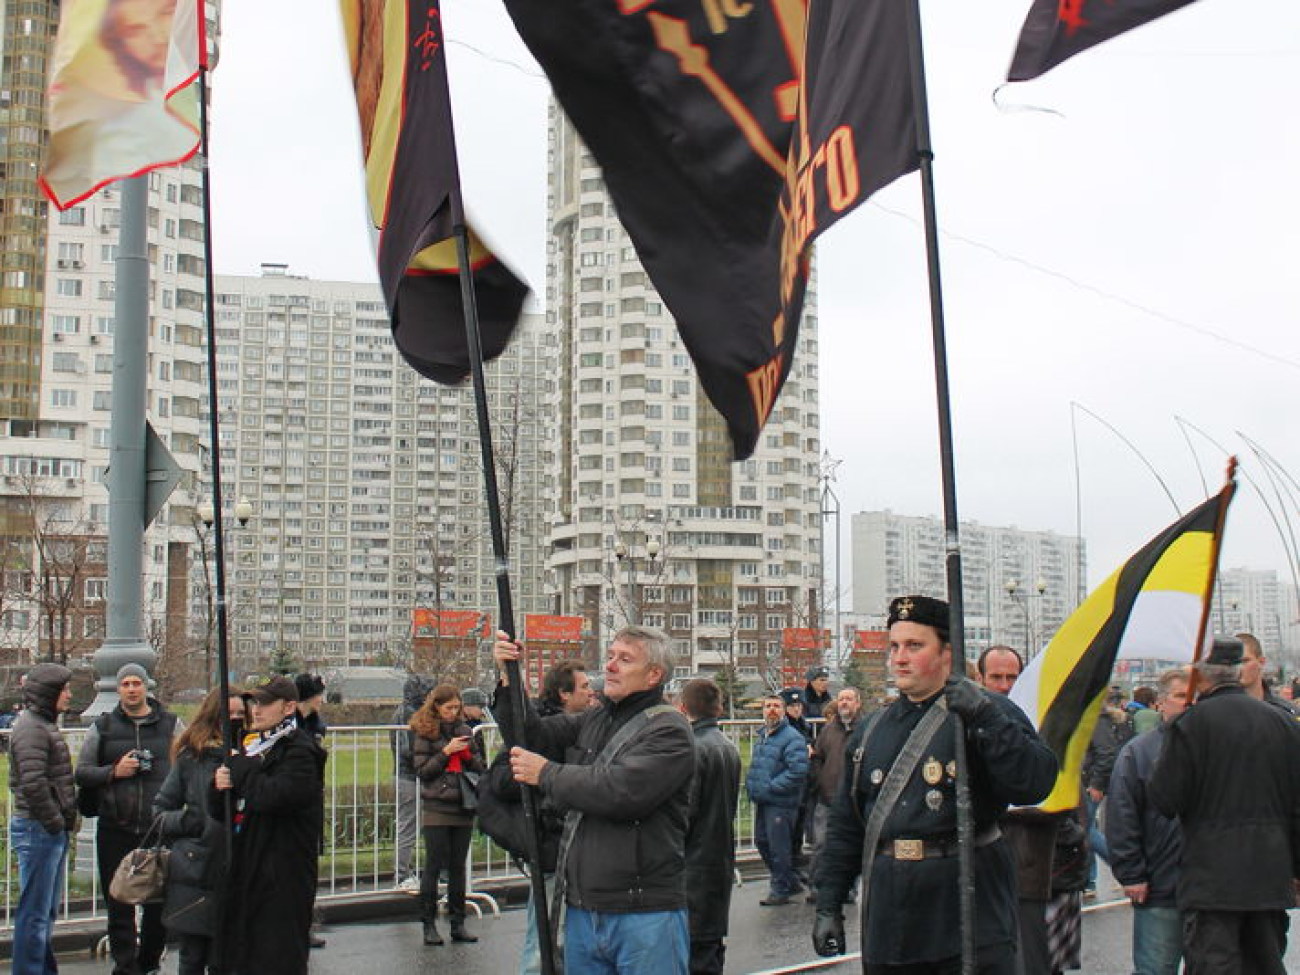 В Москве прошел «Русский марш» против азиатов и кавказцев, 4 ноября 2013г.